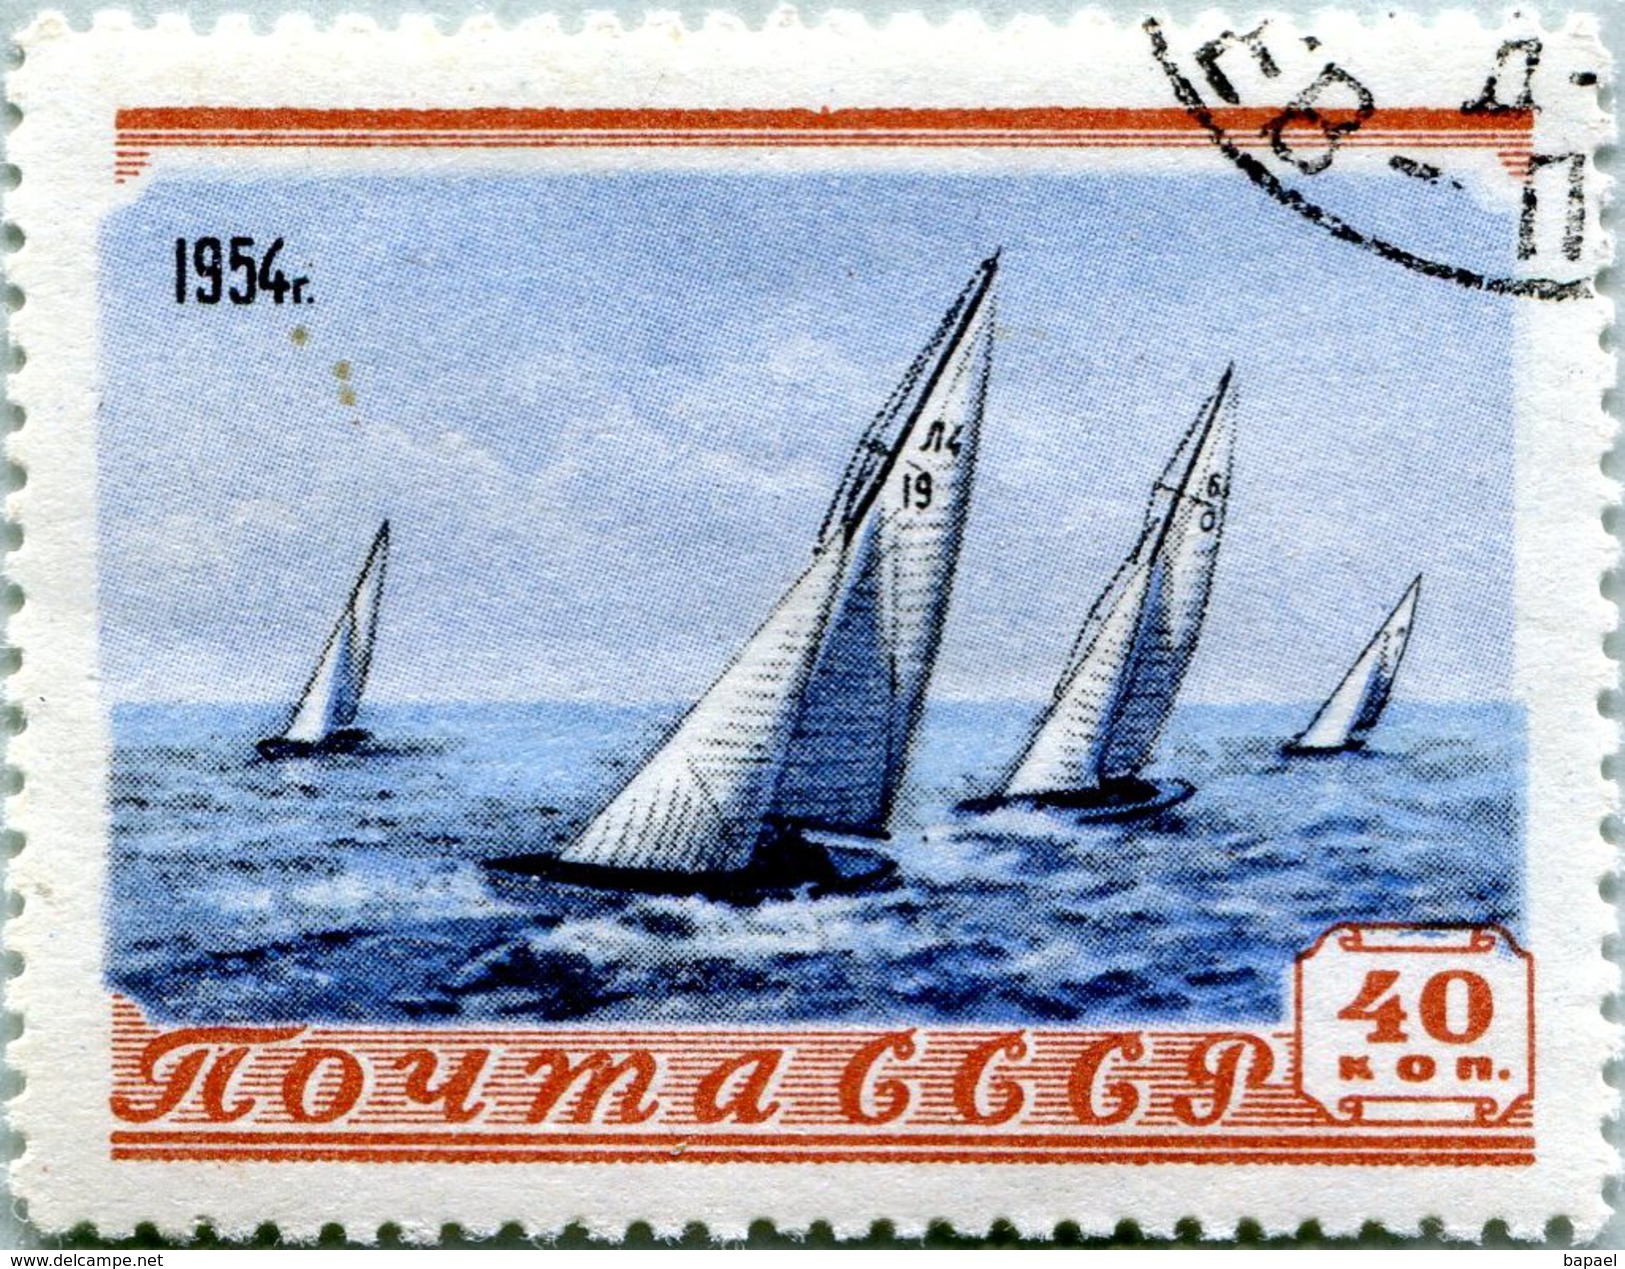 N° Yvert & Tellier 2694 - Timbre D'URSS (1954) - U (Oblitéré Avec Gomme D'Origine) - Yachting - Oblitérés